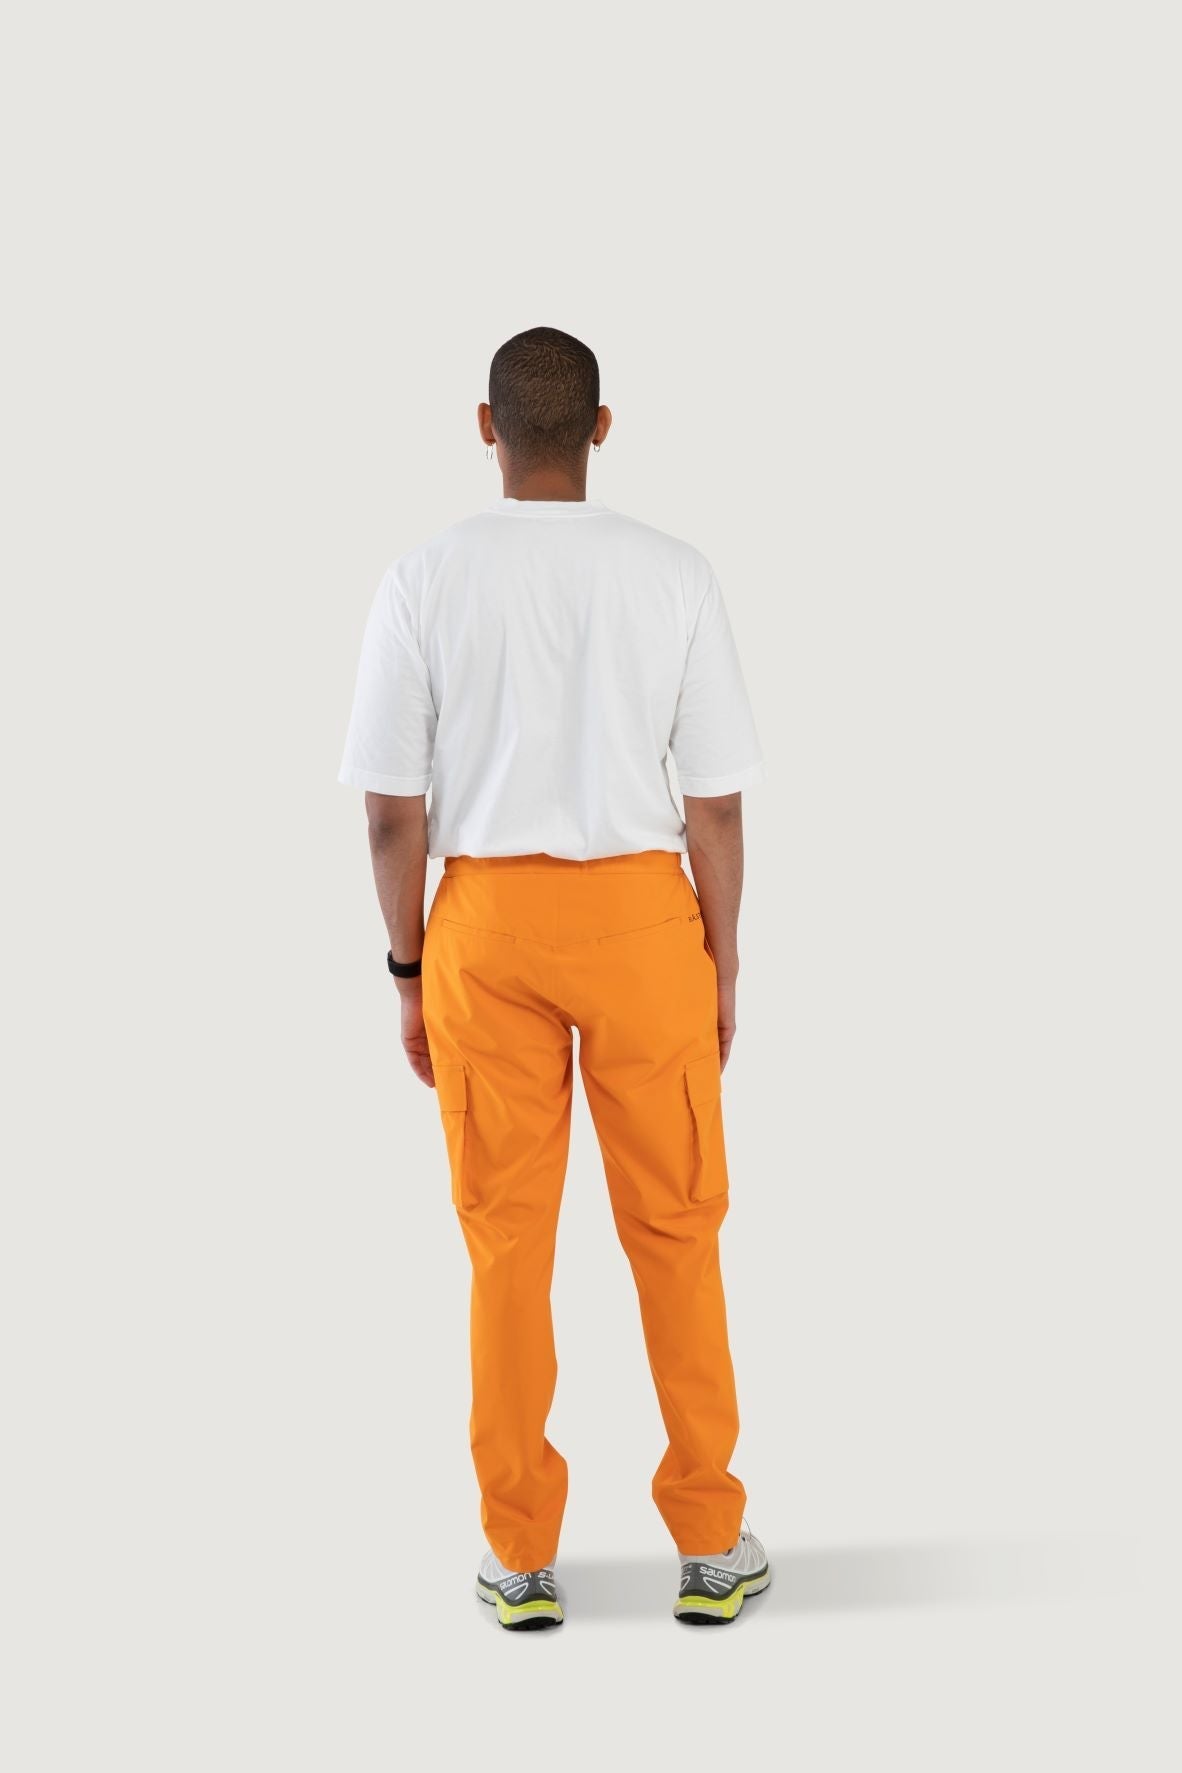 Model wearing Giske pant from Blæst in Orange